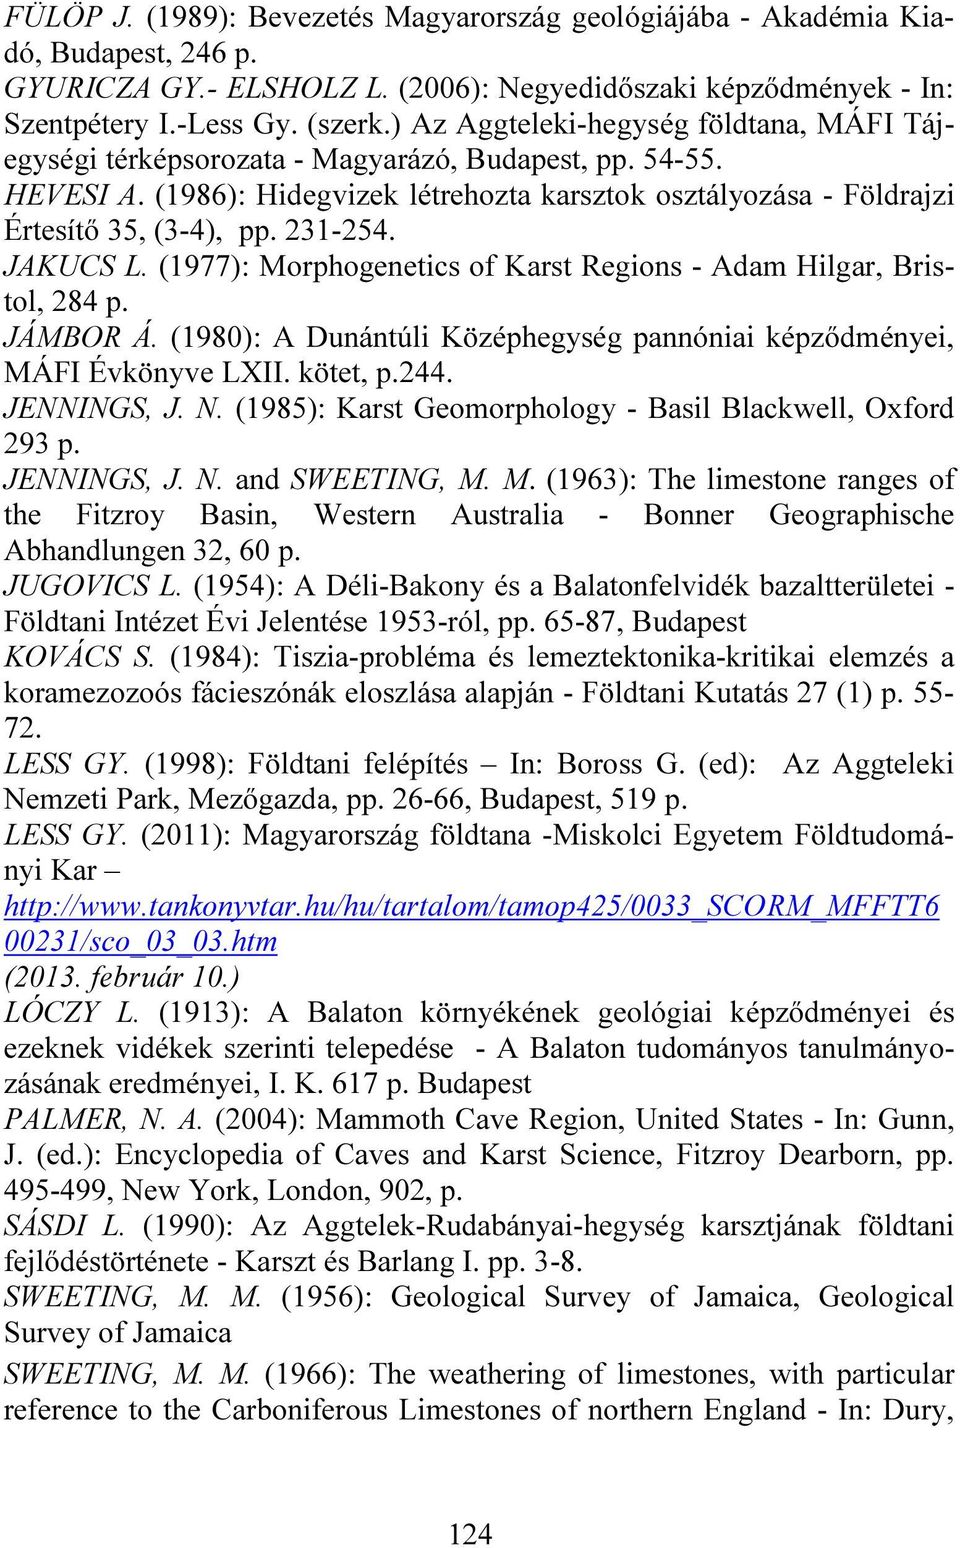 231-254. JAKUCS L. (1977): Morphogenetics of Karst Regions - Adam Hilgar, Bristol, 284 p. JÁMBOR Á. (1980): A Dunántúli Középhegység pannóniai képződményei, MÁFI Évkönyve LXII. kötet, p.244.